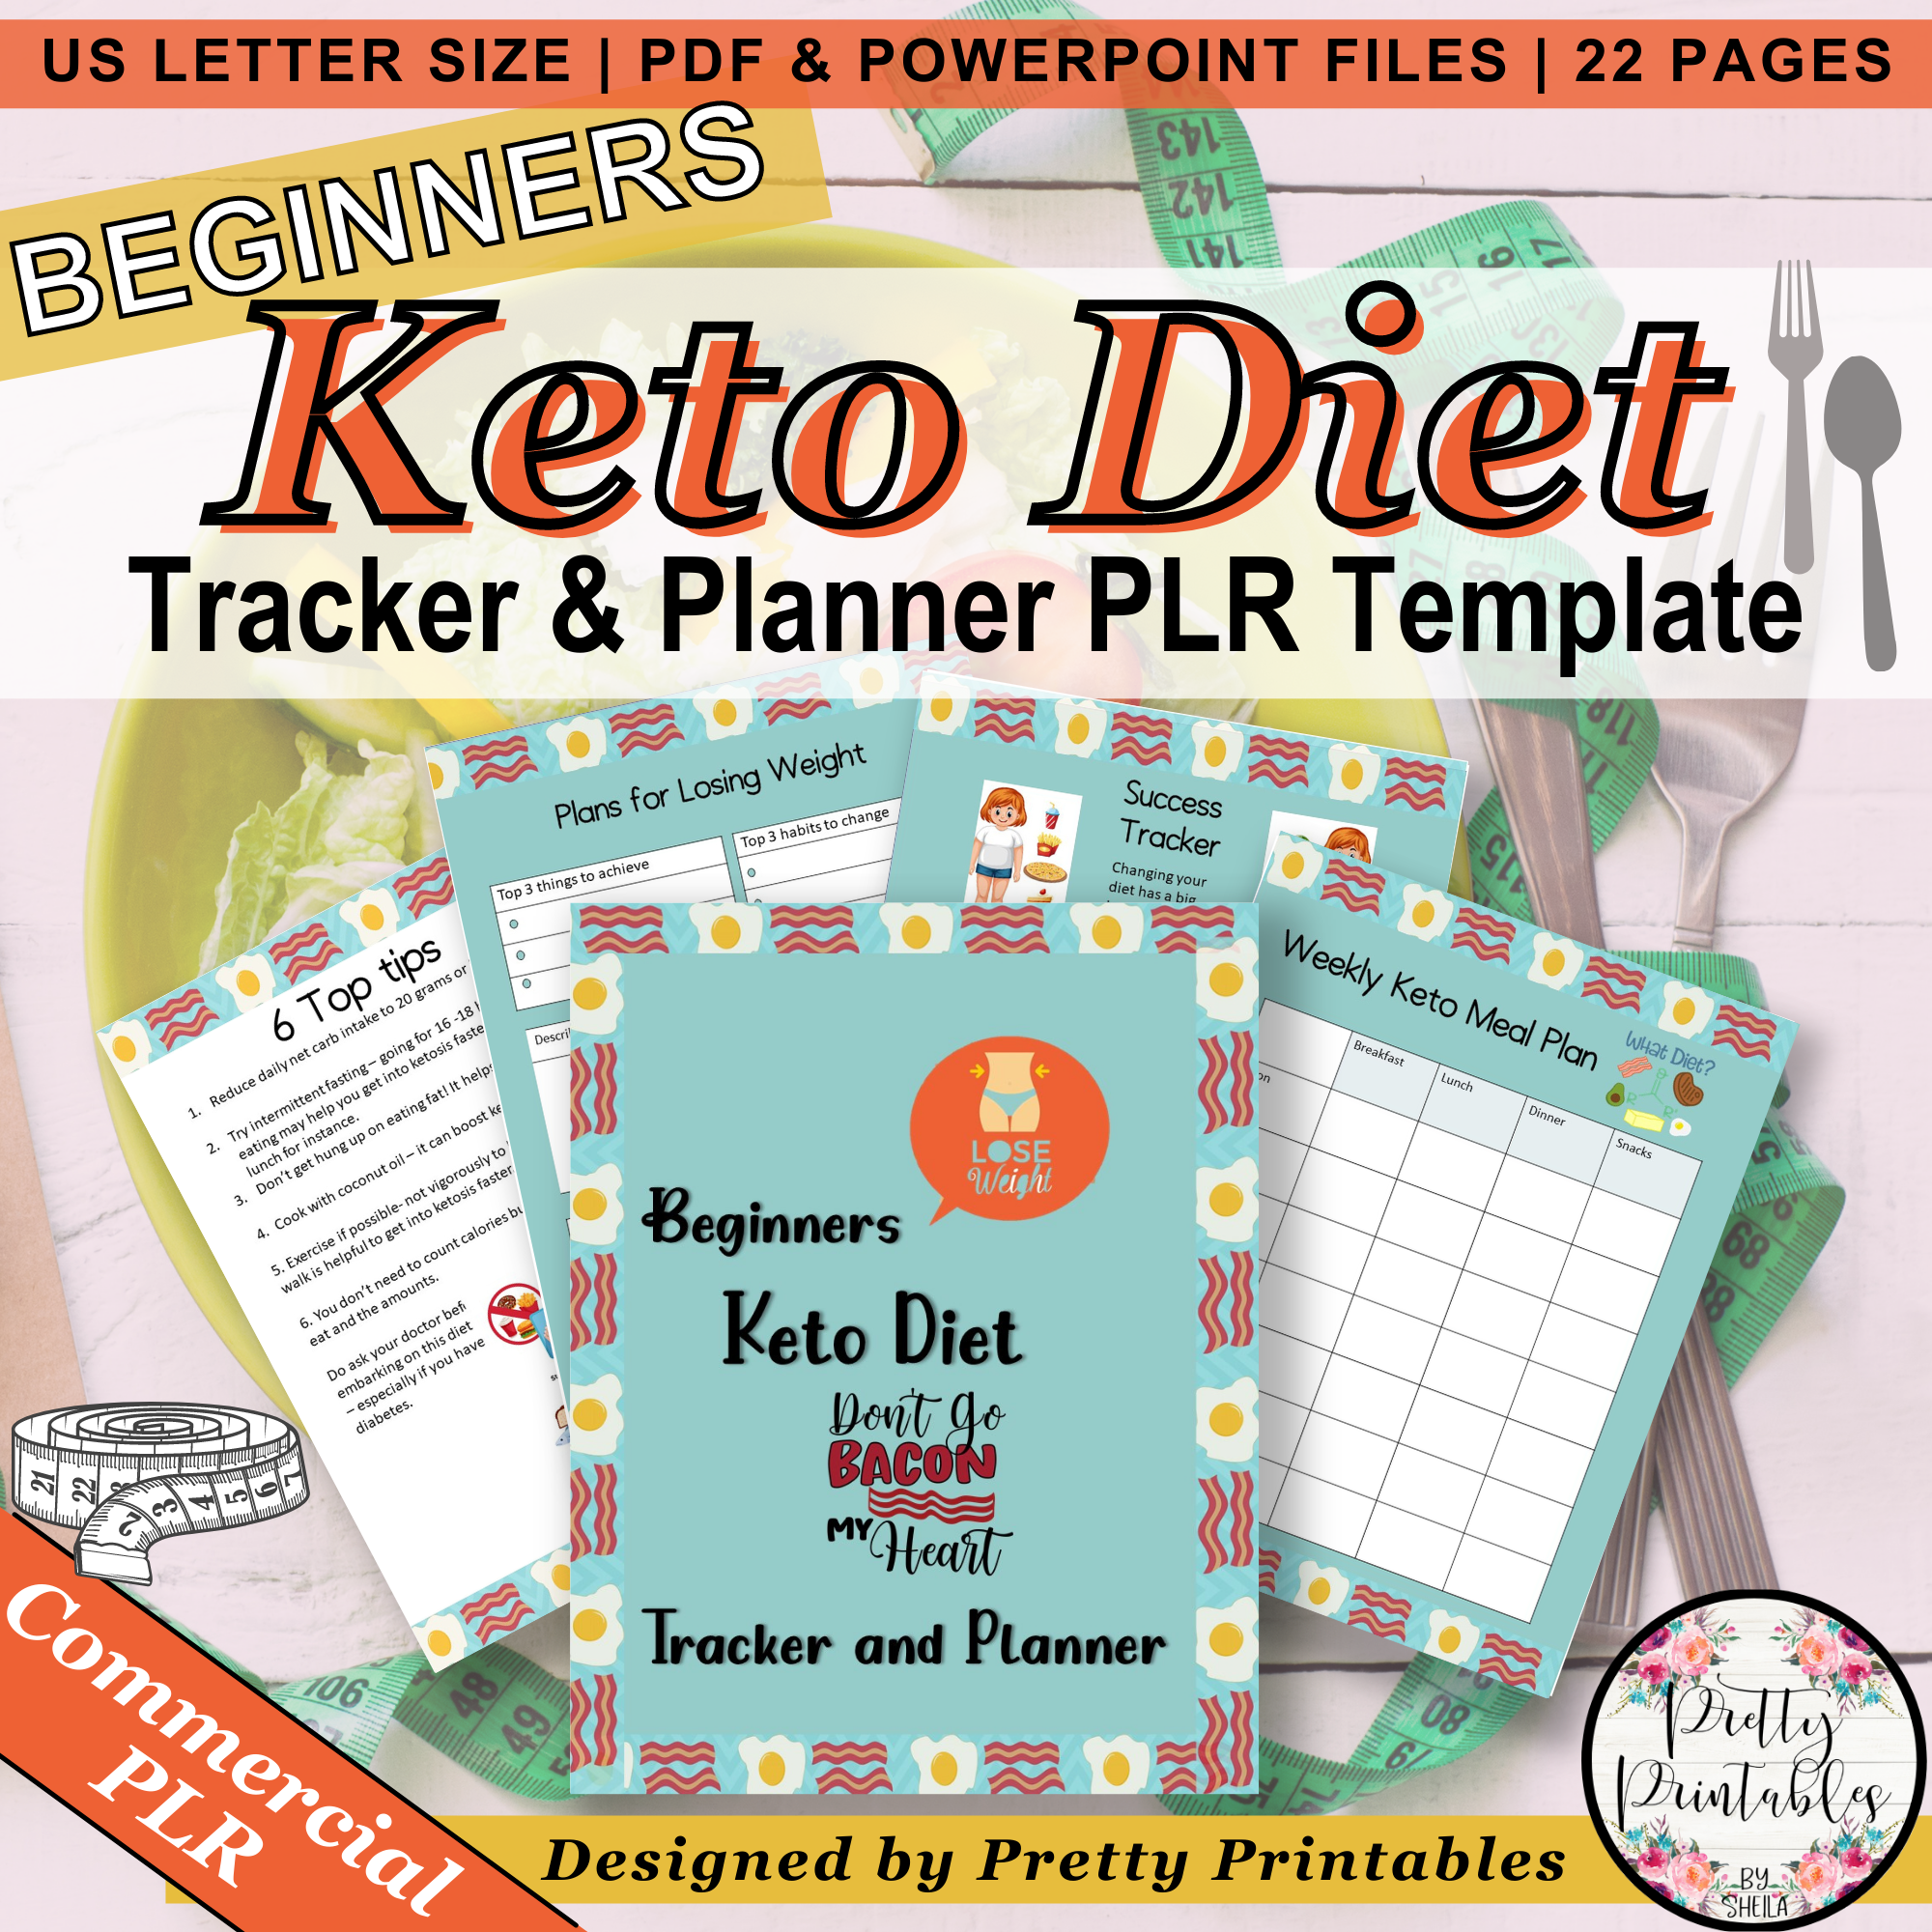 Keto Diet For Beginners Tracker & Planner Commercial PLR Template